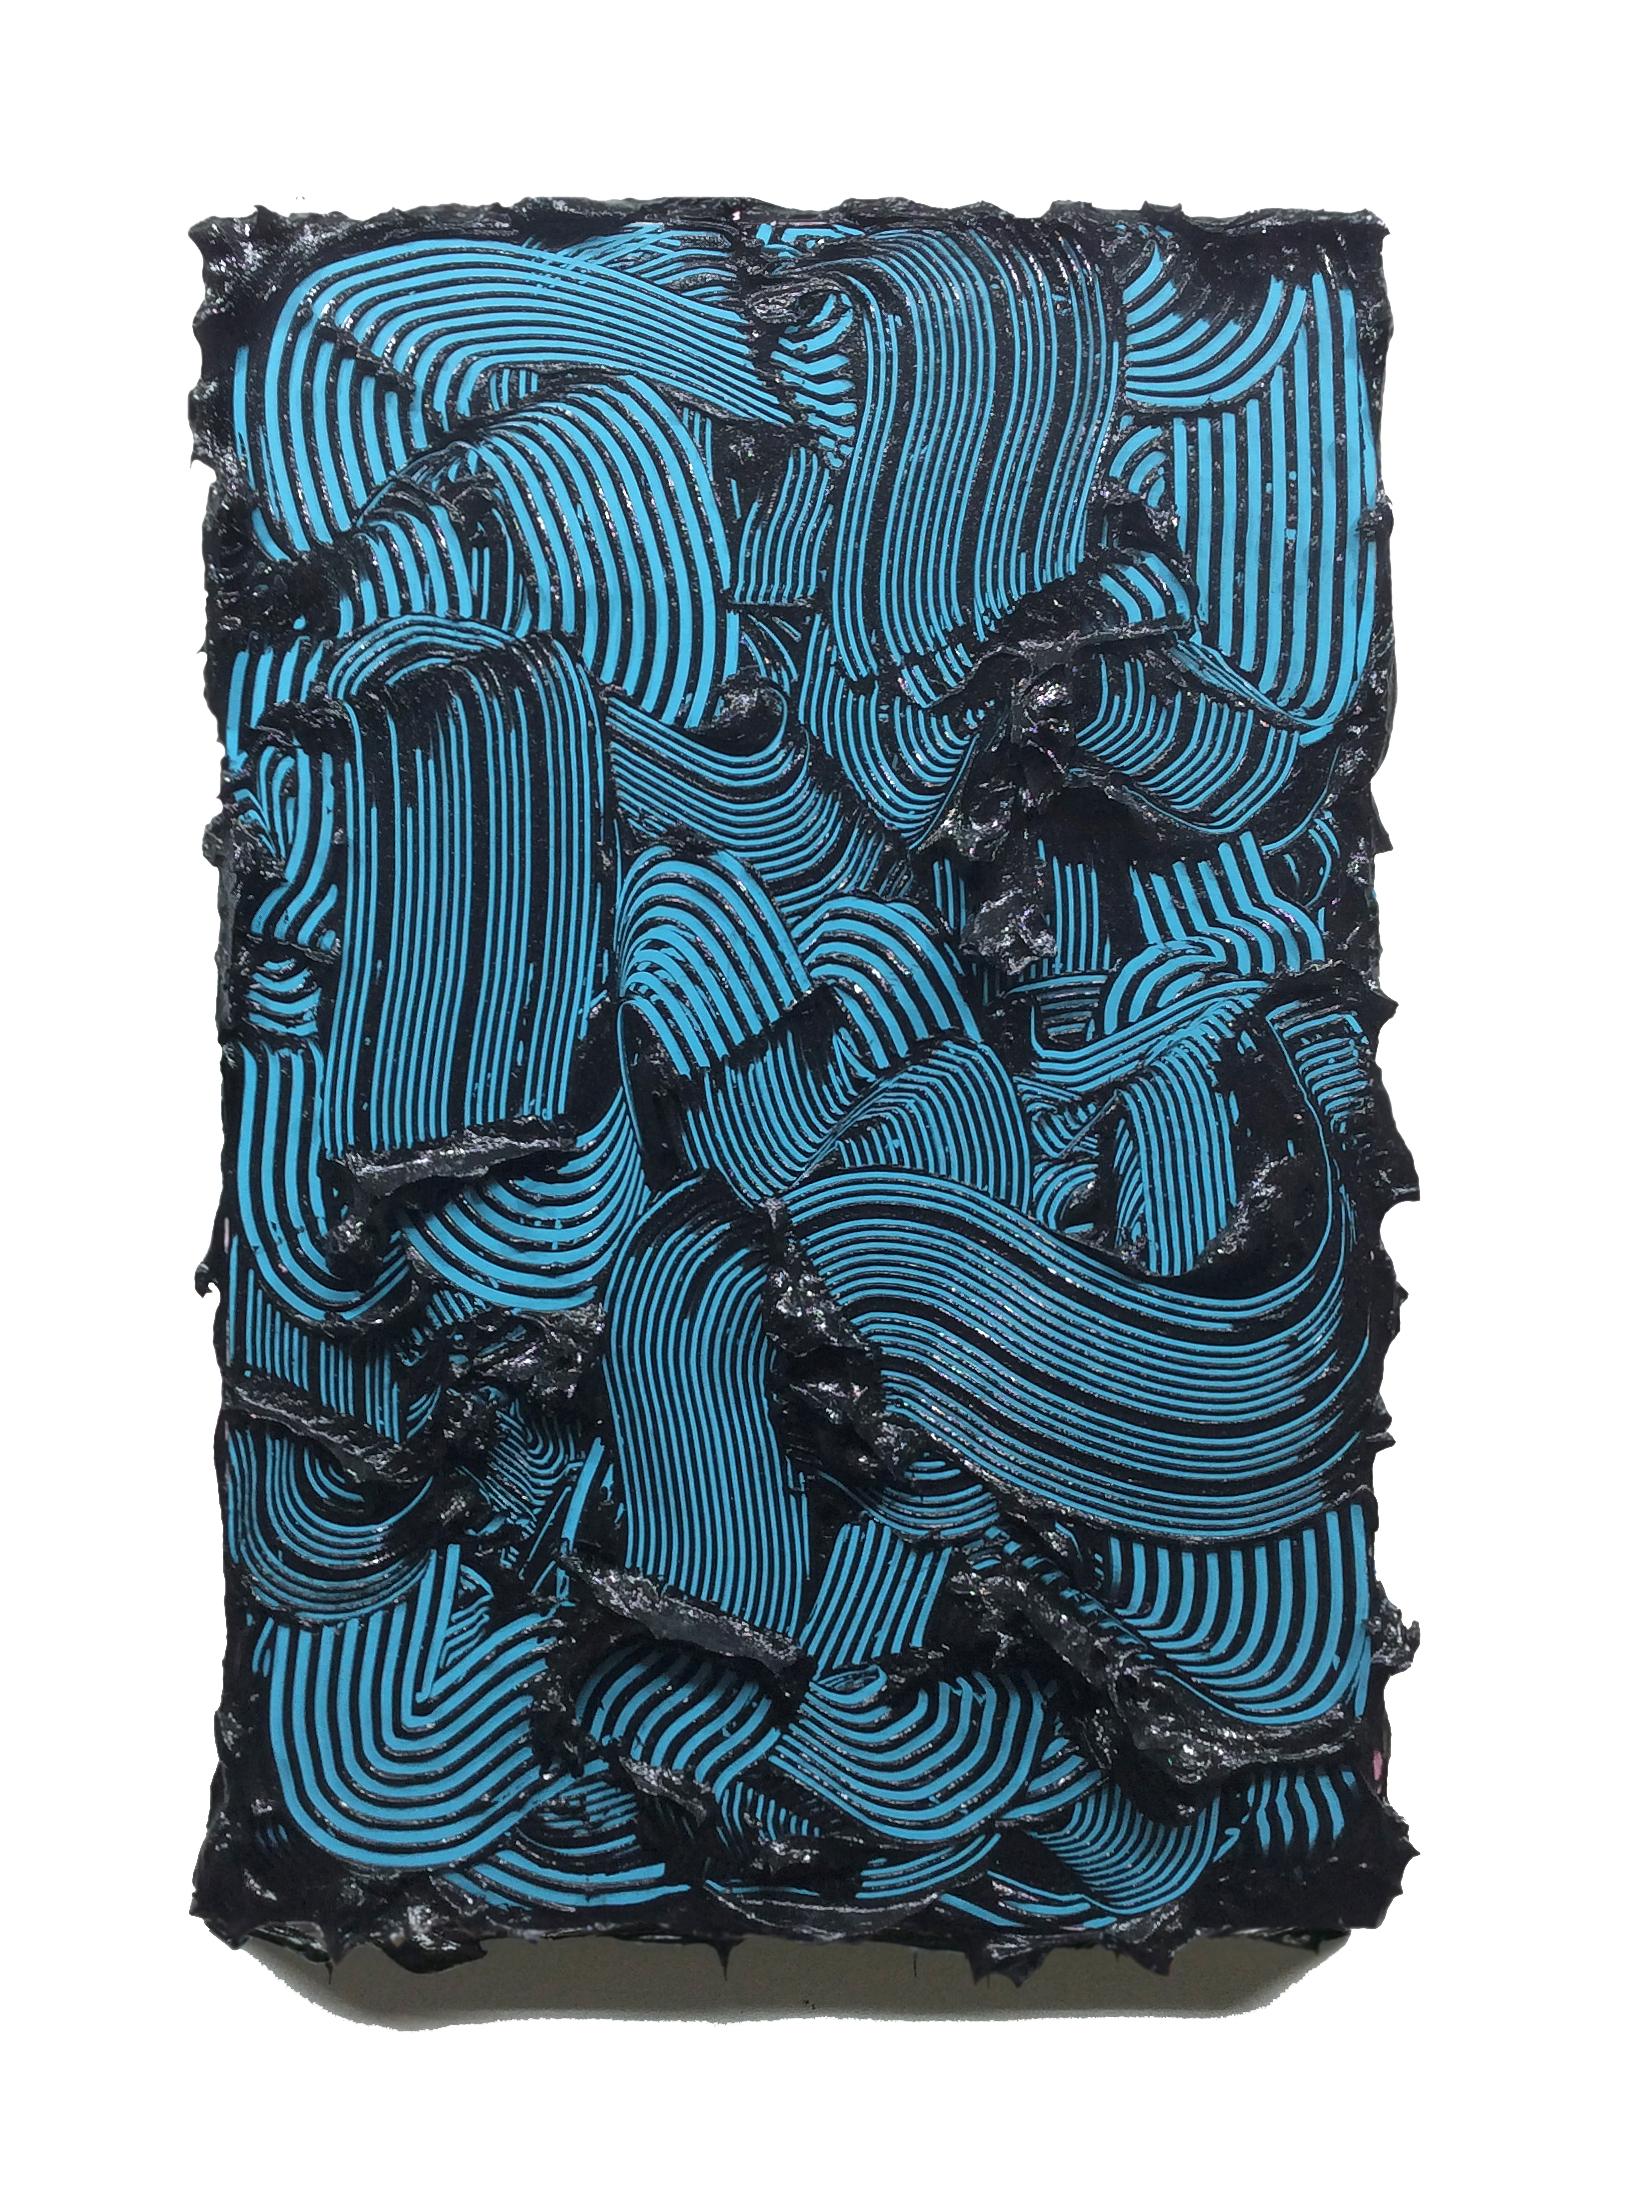 Peinture contemporaine texturée Poseidon, couleurs vives, traits bleus, abstrait - Abstrait Sculpture par Tim Nikiforuk